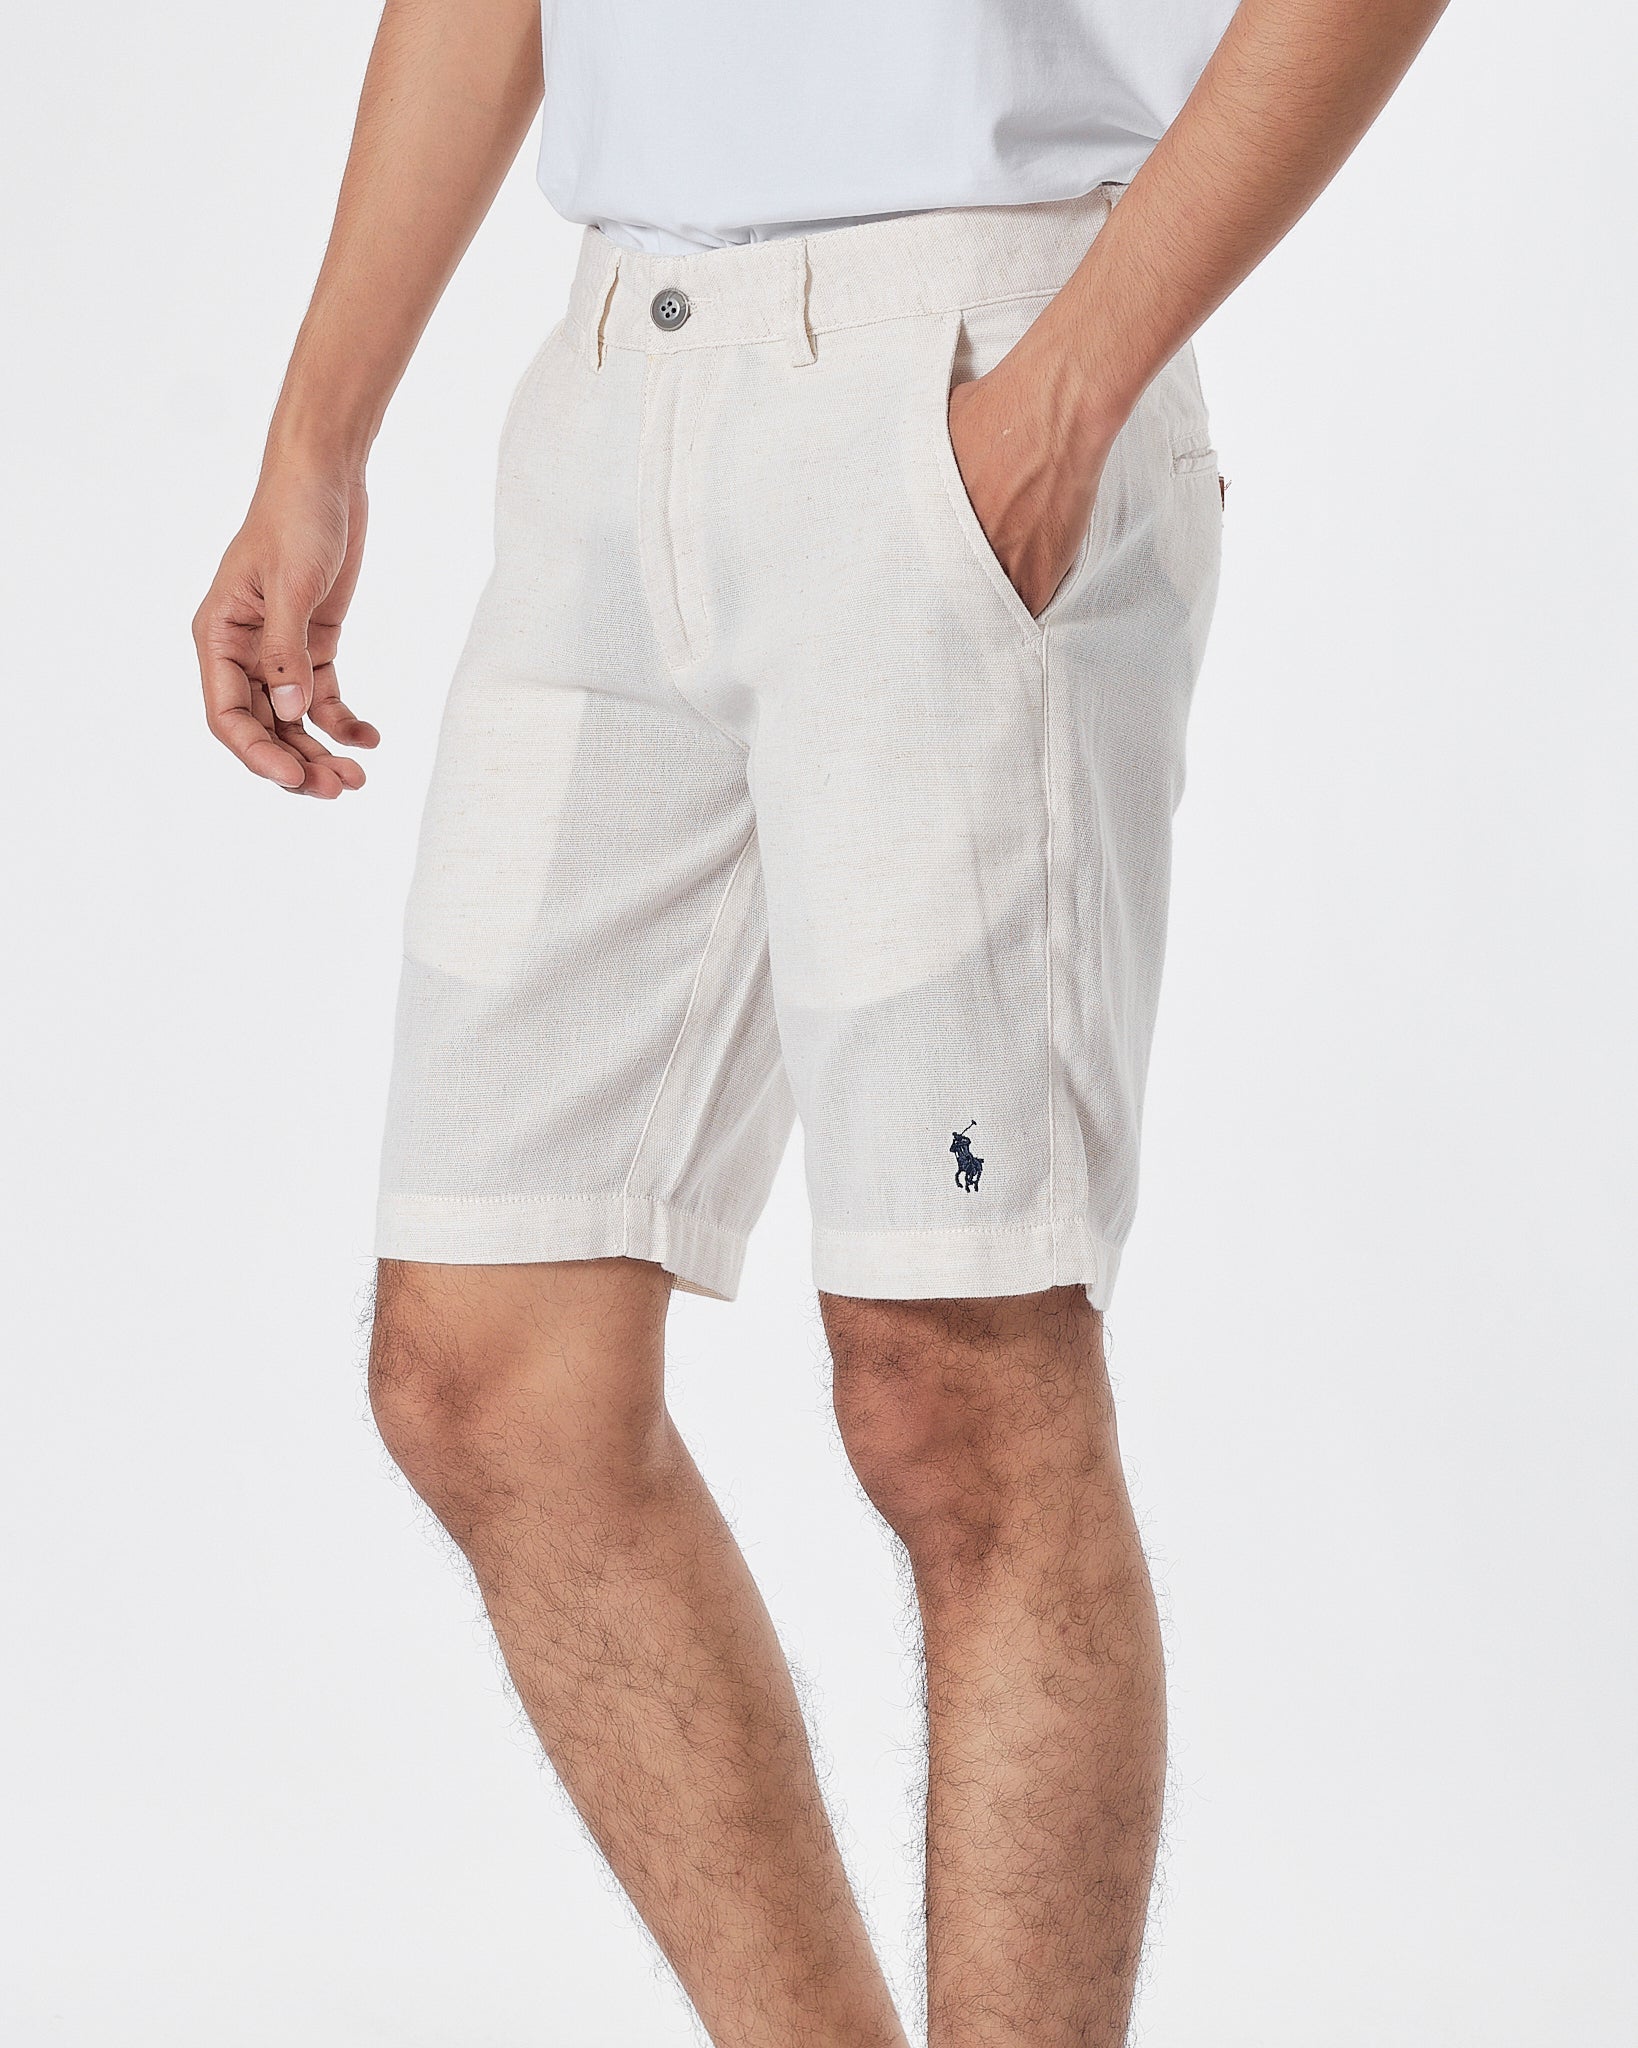 RL Linen Men White Short Pants 17.90